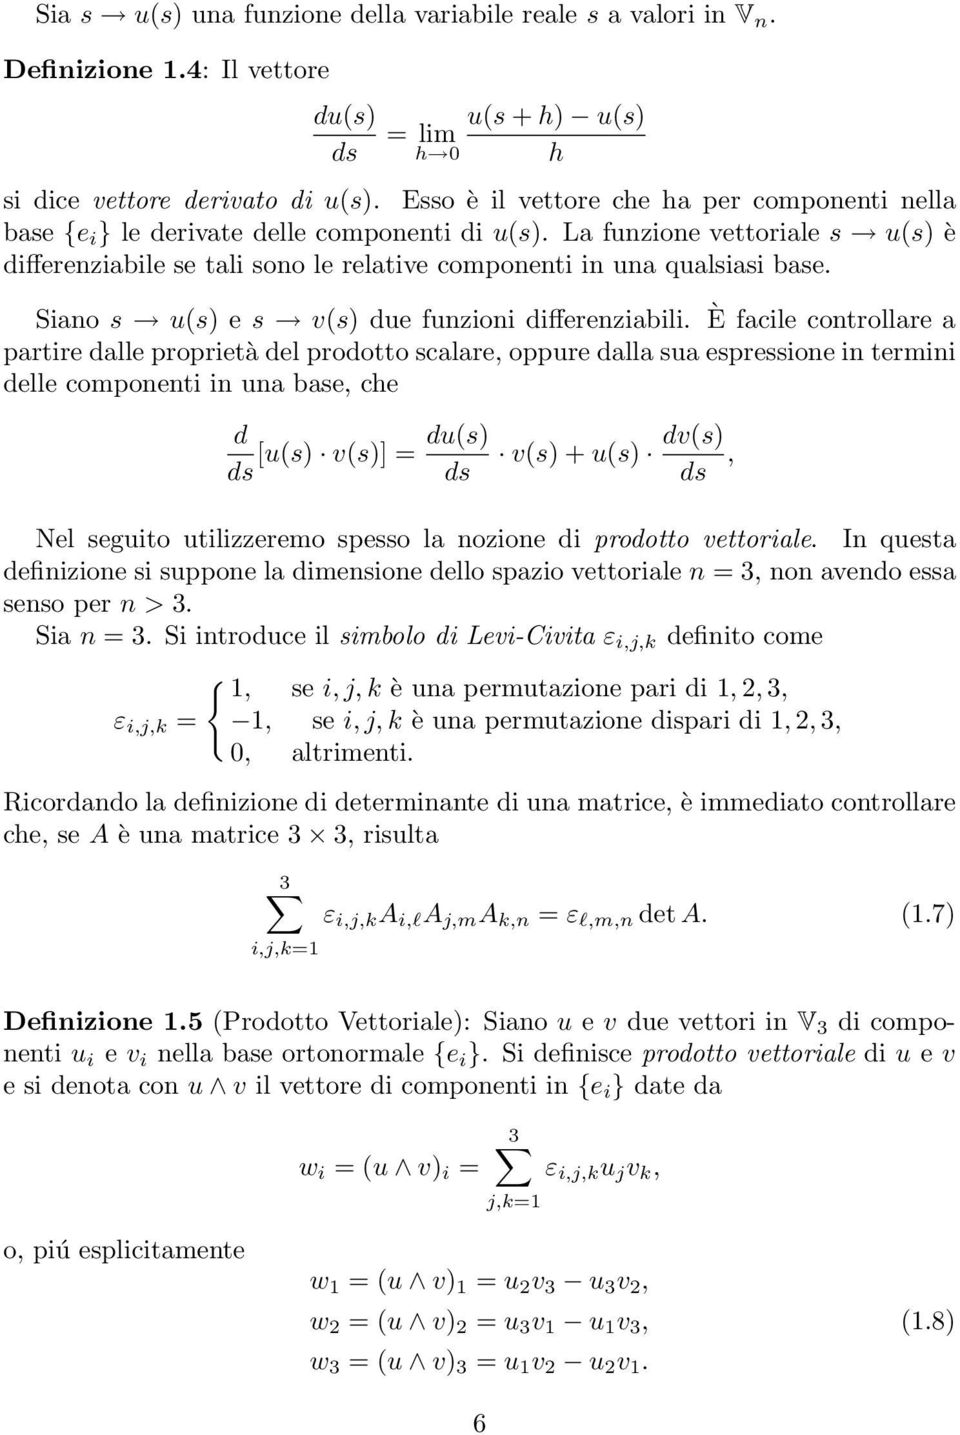 La funzione vettoriale s u(s) è differenziabile se tali sono le relative componenti in una qualsiasi base. Siano s u(s) e s v(s) due funzioni differenziabili.